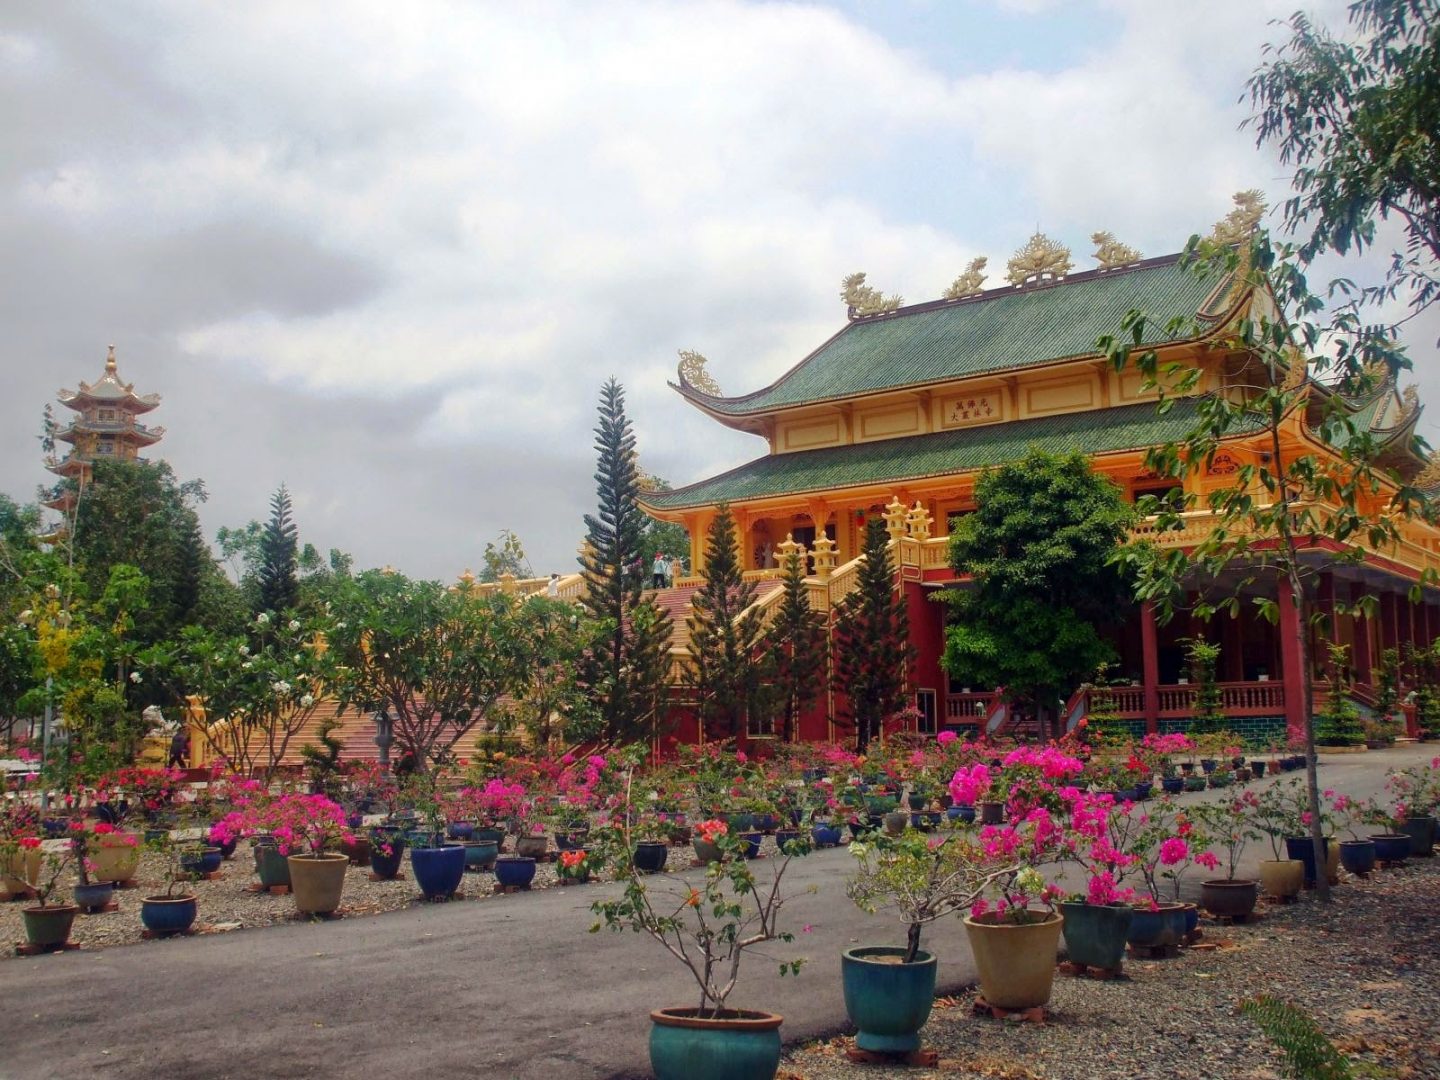 Đại Tòng Lâm Tự: một trong những ngôi chùa nhiều kỷ lục nhất Việt Nam